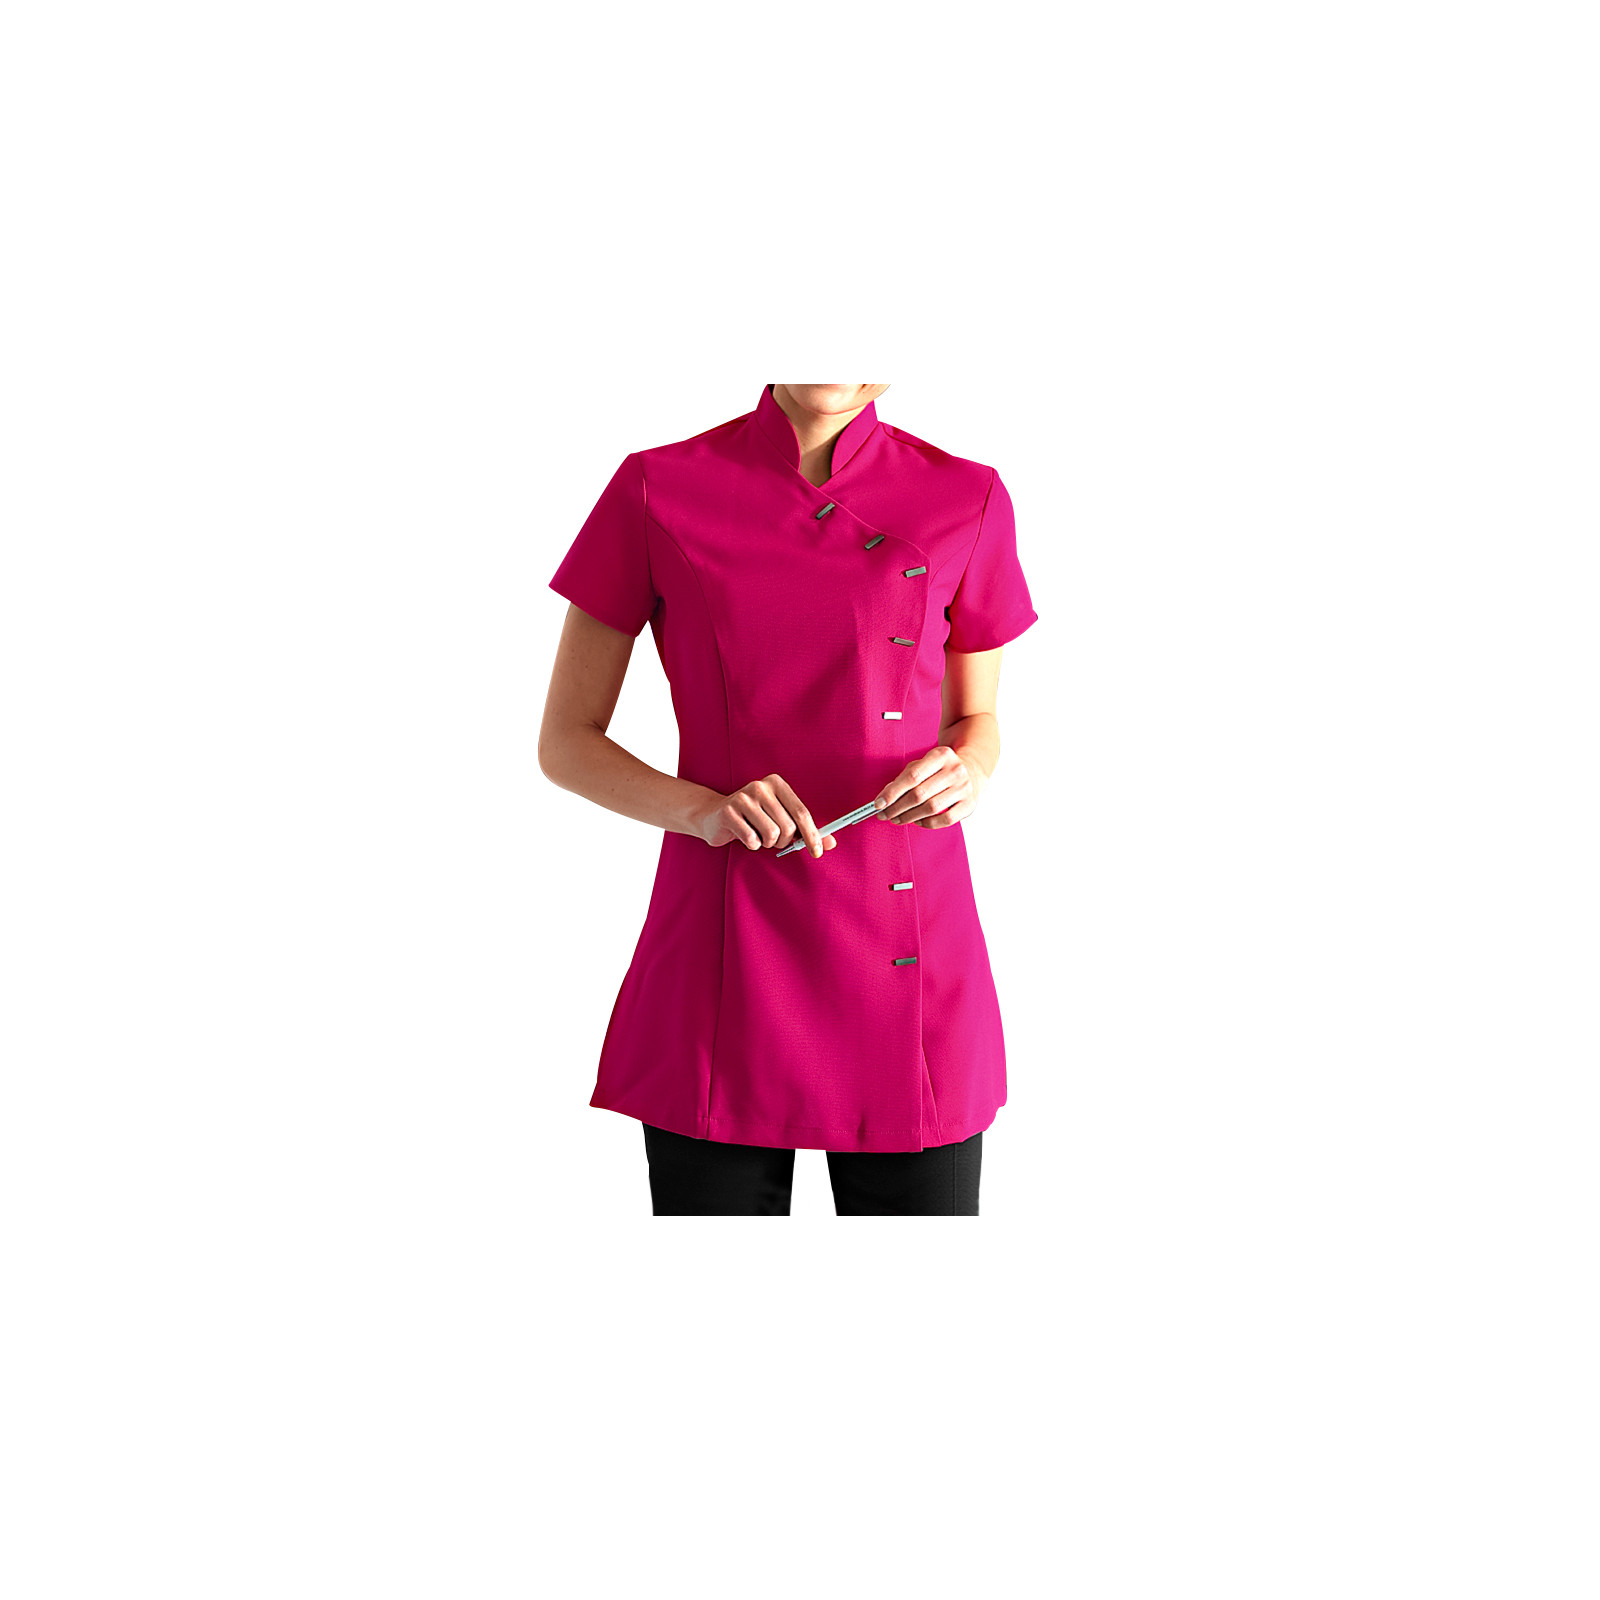 Blouse médicale femme "Fleur", Clinic dress rose